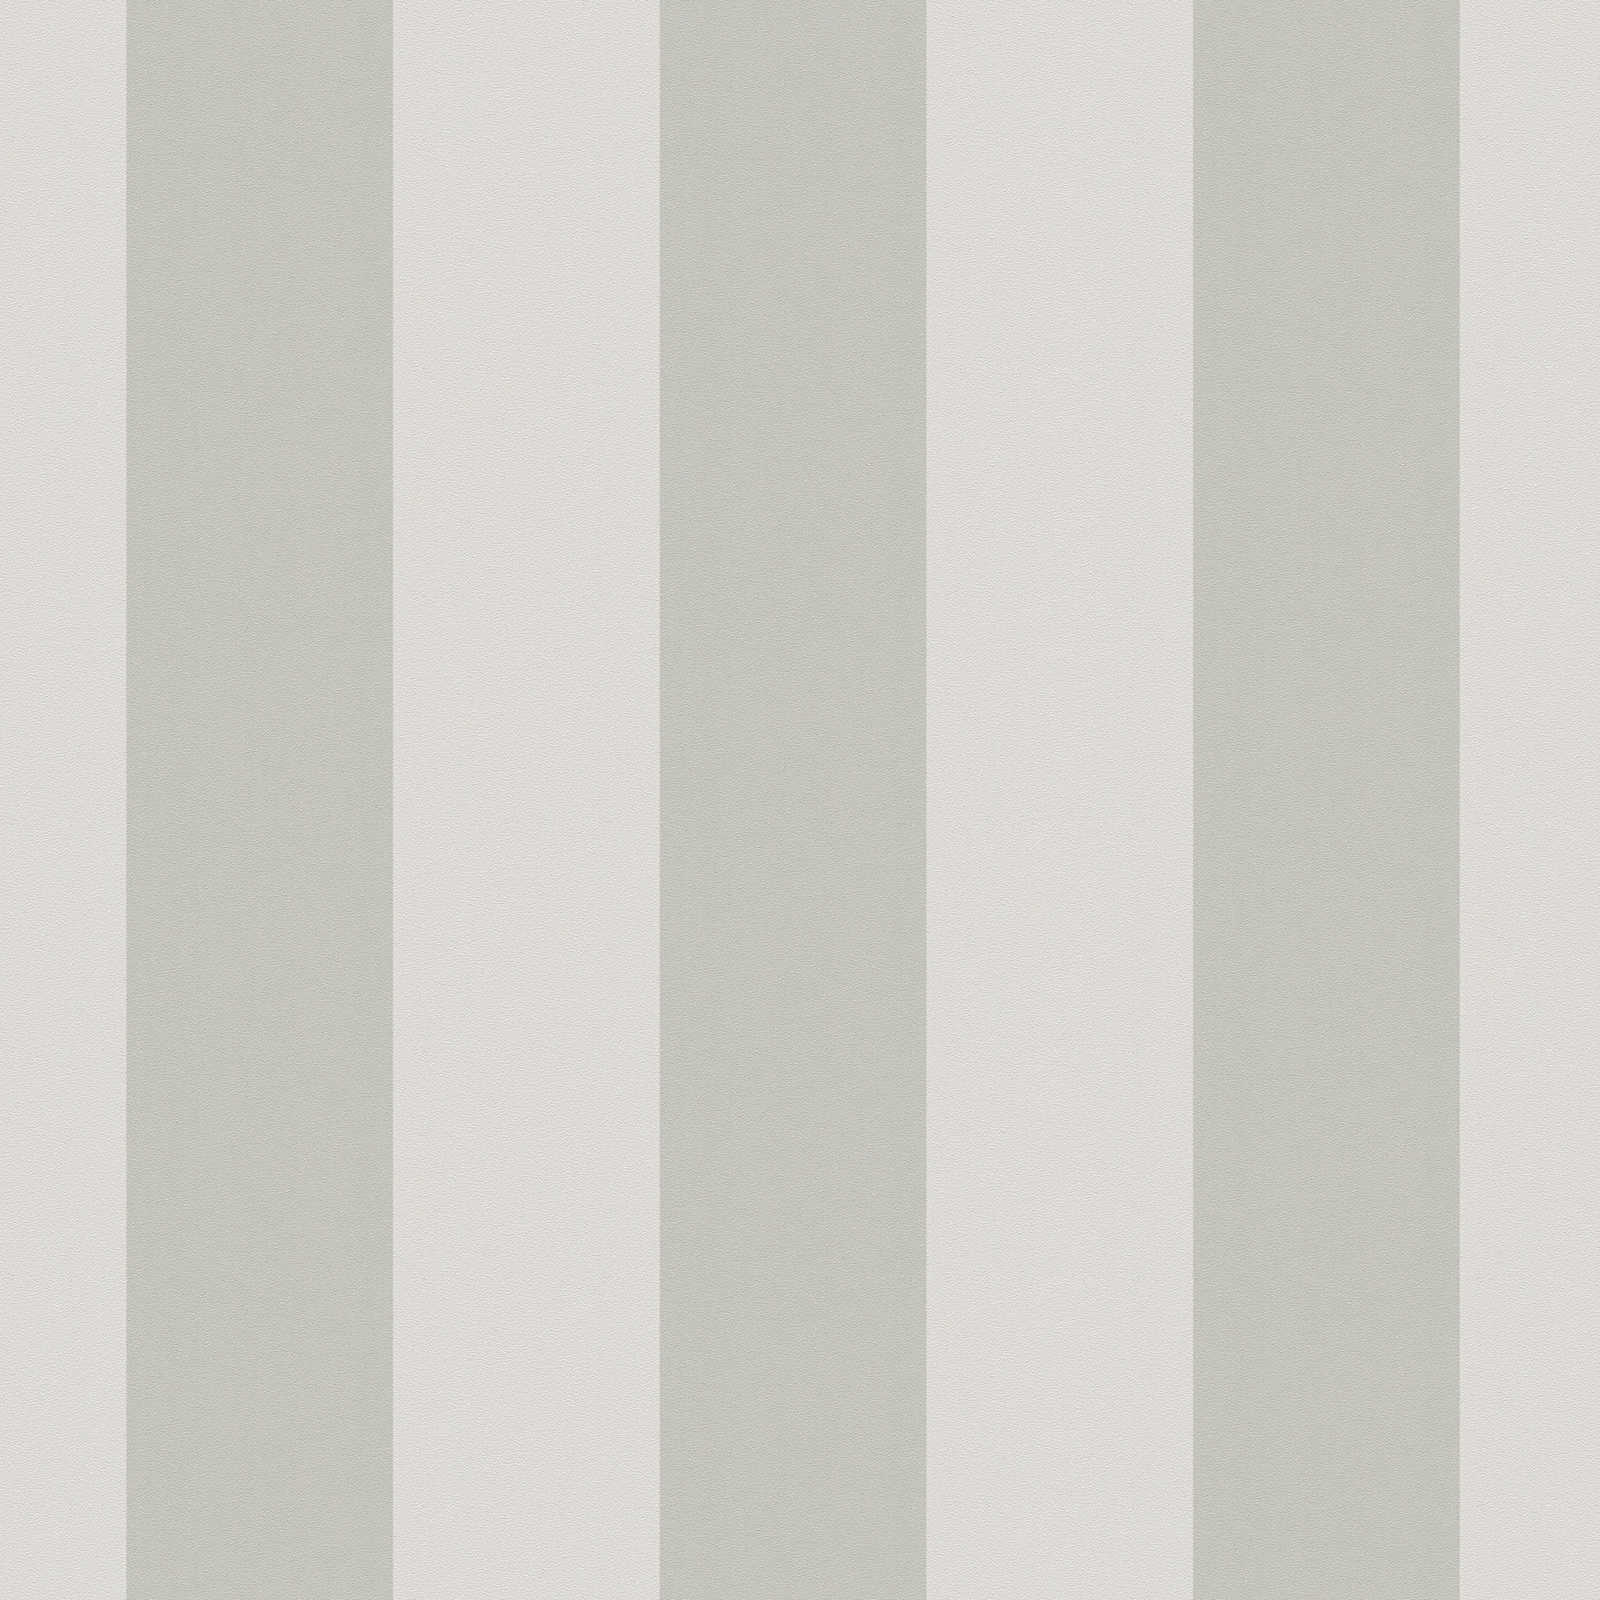             Carta da parati in tessuto non tessuto con strisce a blocchi e struttura leggera - grigio
        